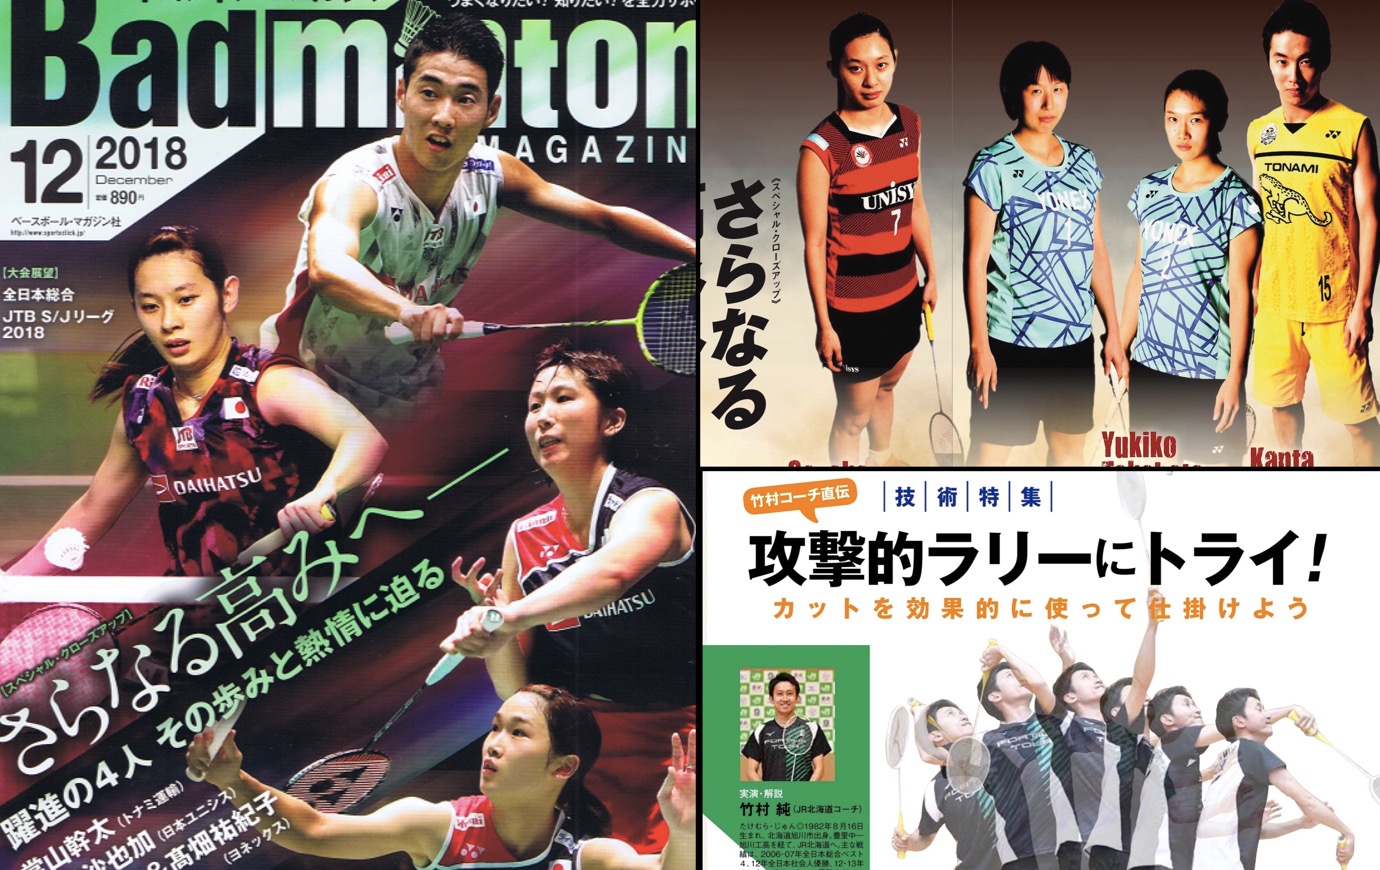 バドマガ情報 バドミントン マガジン12月号が発売 バドスピ Badminton Spirit